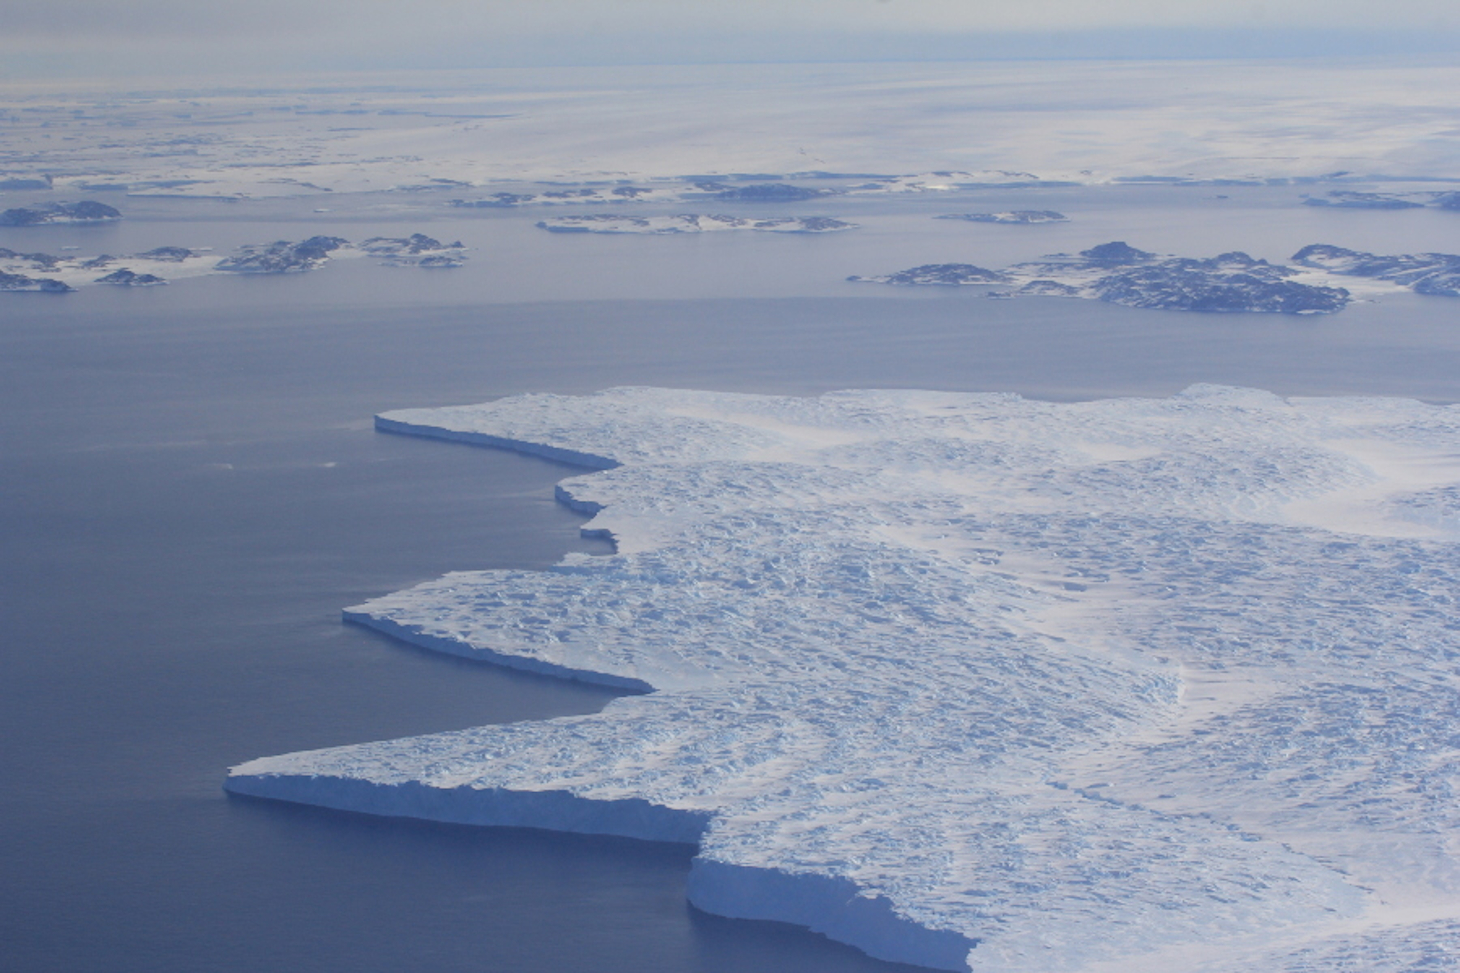 Langue glaciaire flottant sur la mer, près de la base australienne de Casey en Antarctique (décembre 2014). A l'arrière-plan, on distingue quelques îles et la calotte antarctique. © Bruno Jourdain / Ipev / IGE / CNRS Photothèque